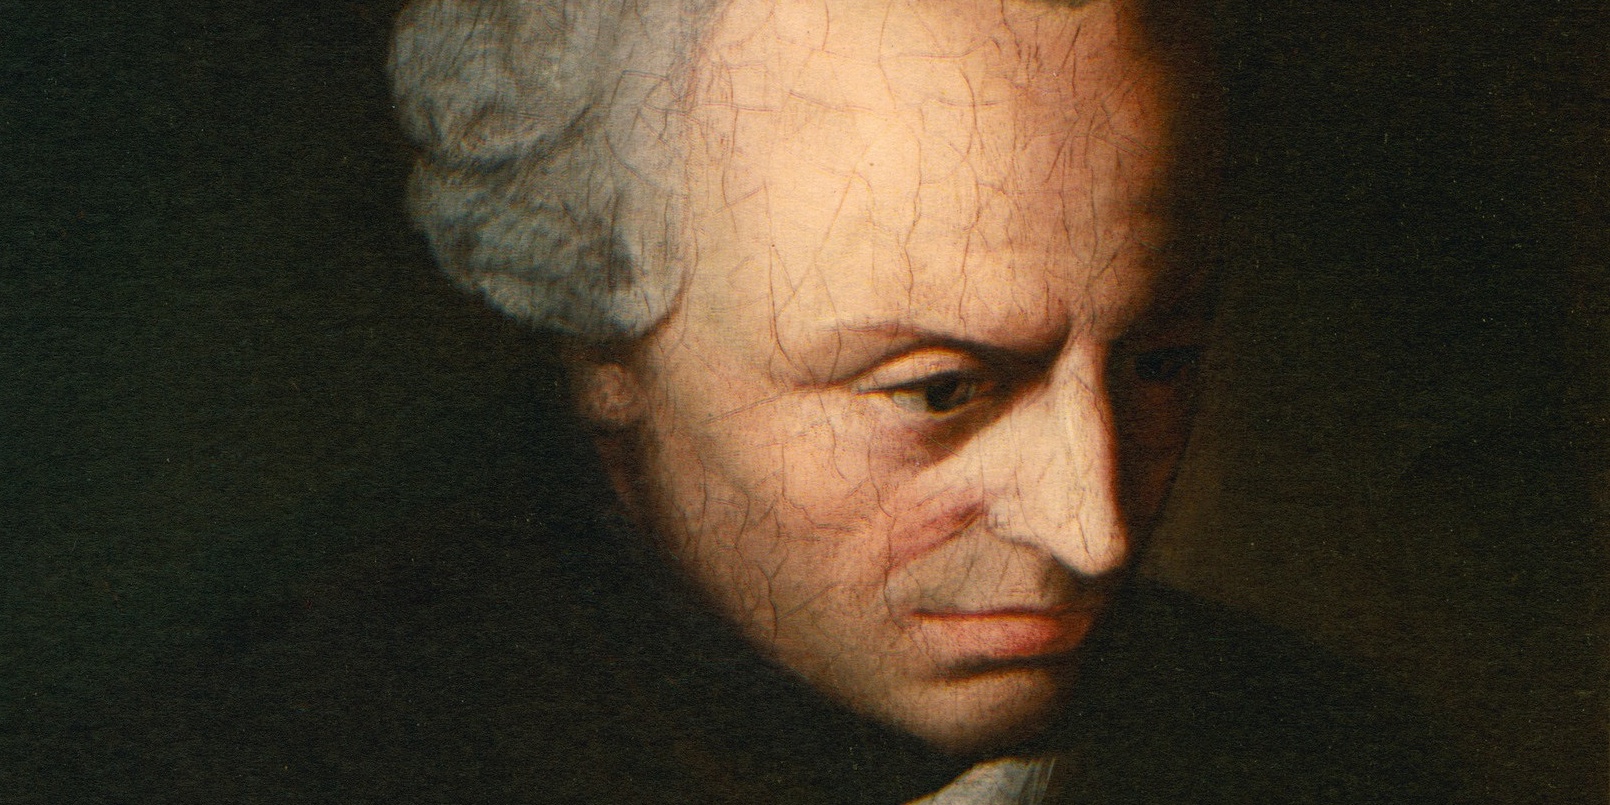 Immanuel Kant; portrait, c. 1970. Detail. Public Domain, via Wikimedia Commons